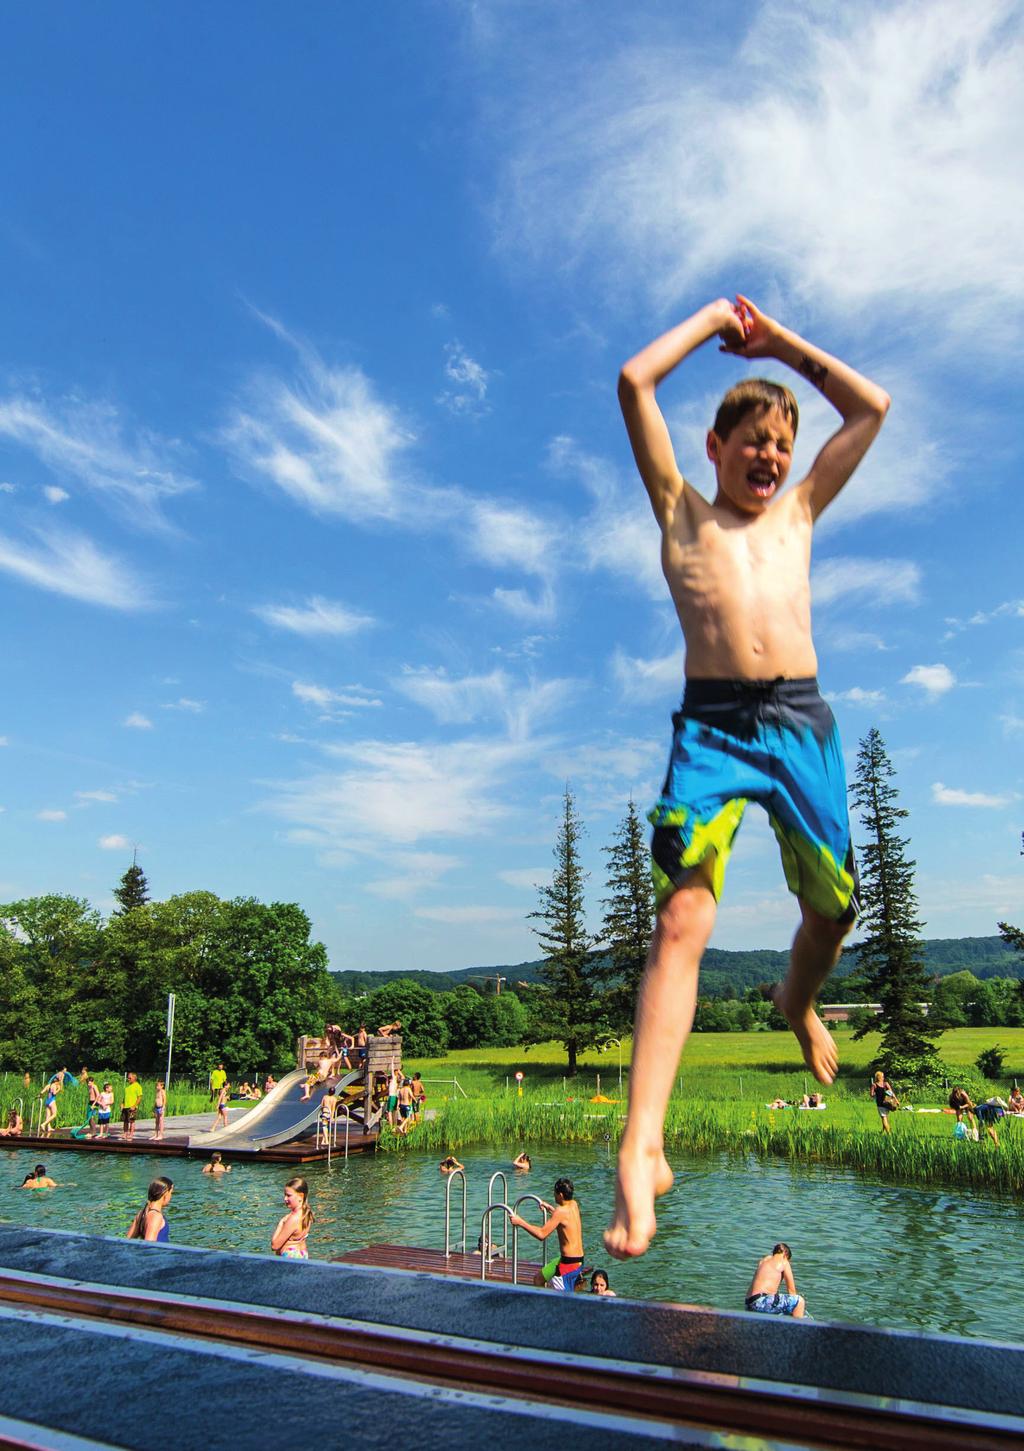 NATUR ERHOLUNG SPASS SPORT Das Naturbad Riehen ist ein attraktives Schwimmbad mit einer zeitgemässen